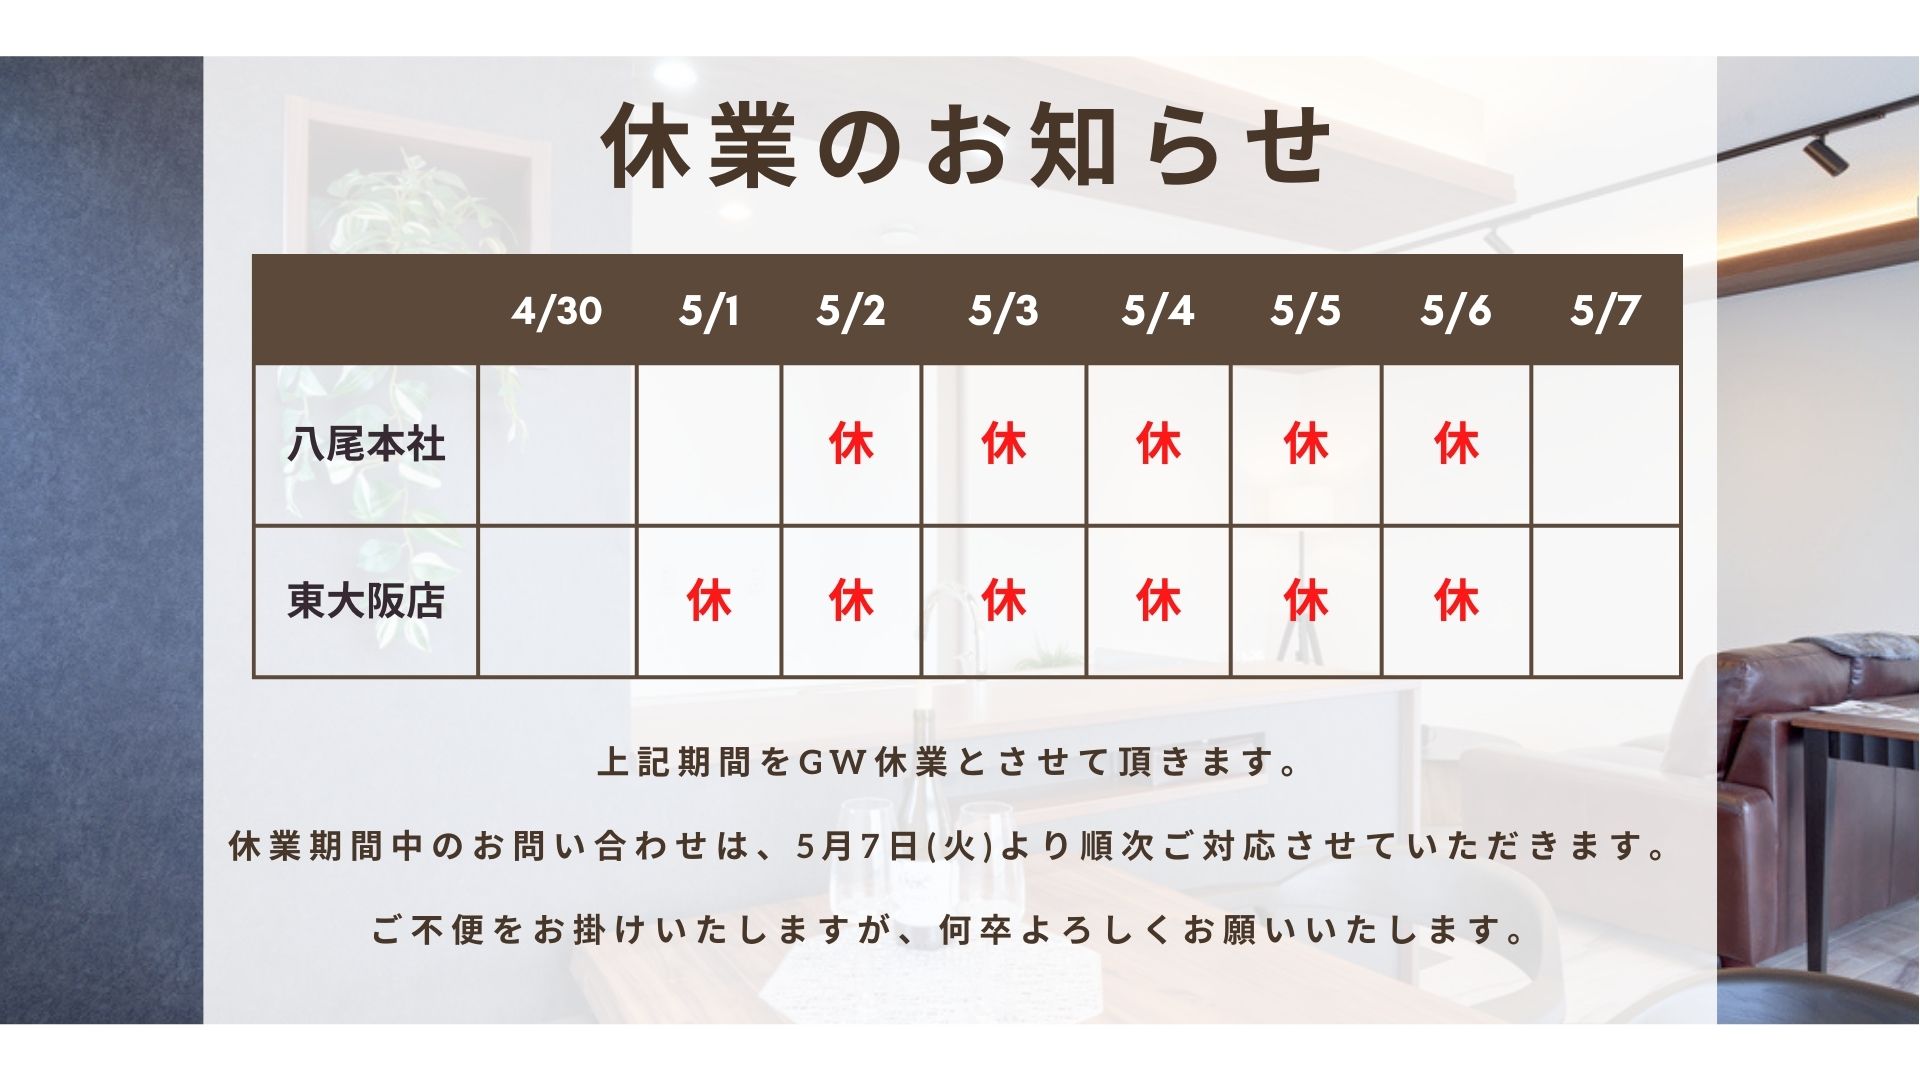 八尾本社は5月2日～6日、東大阪店は5月1日～6日をGW休業とさせていただきます。